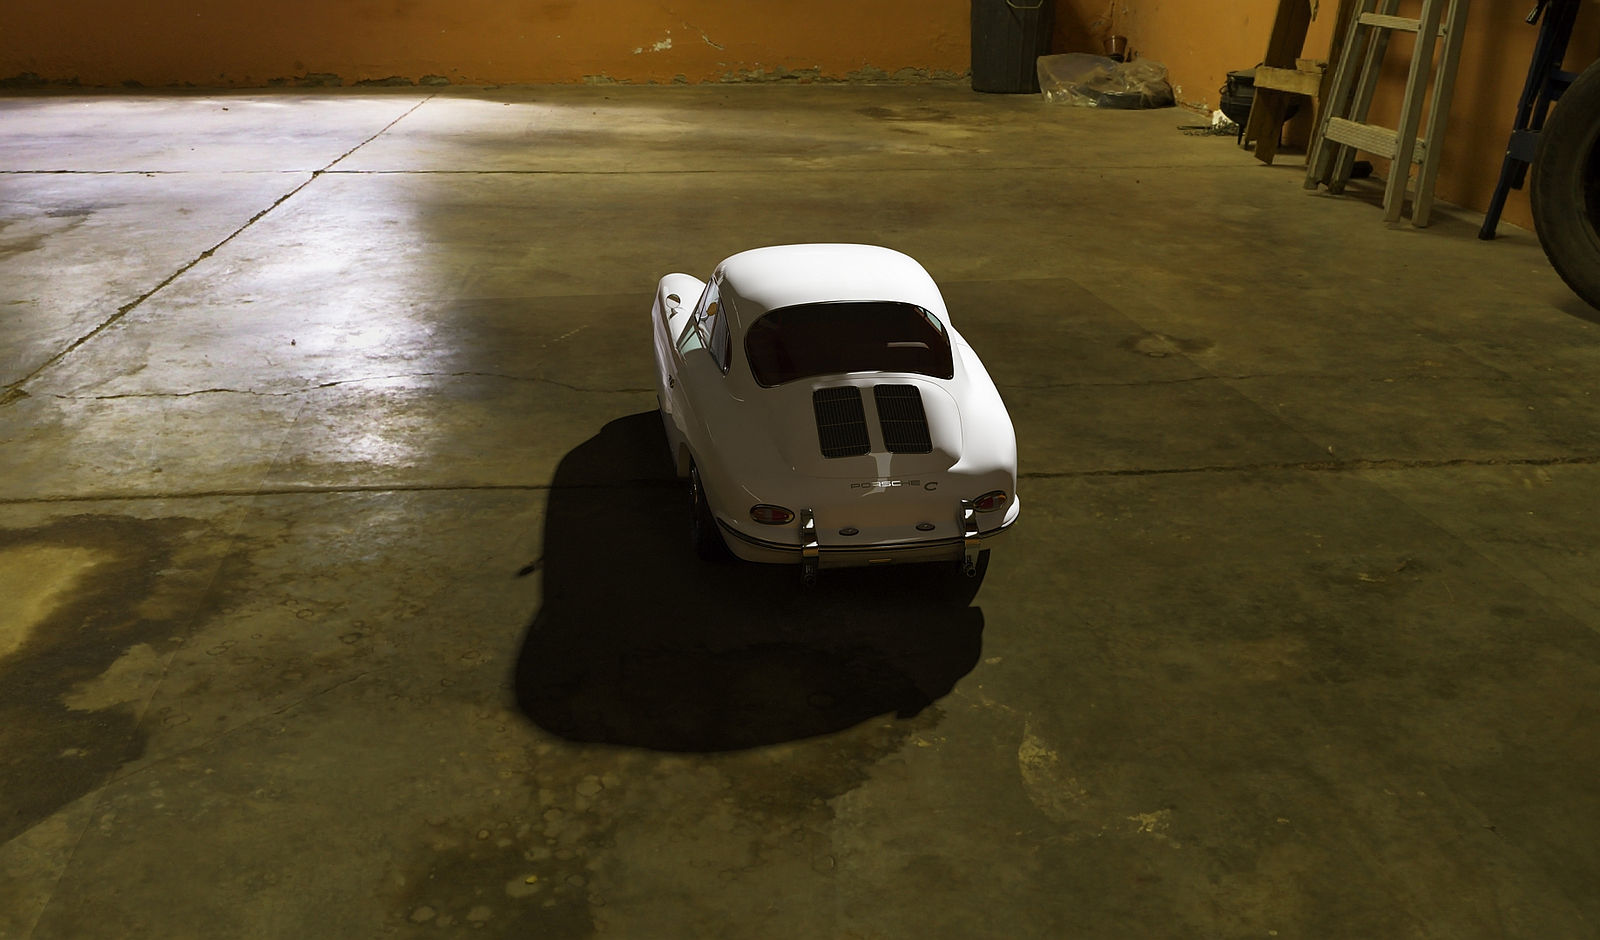 Porsche 356 Coupe 13 9 22p 23m.jpg